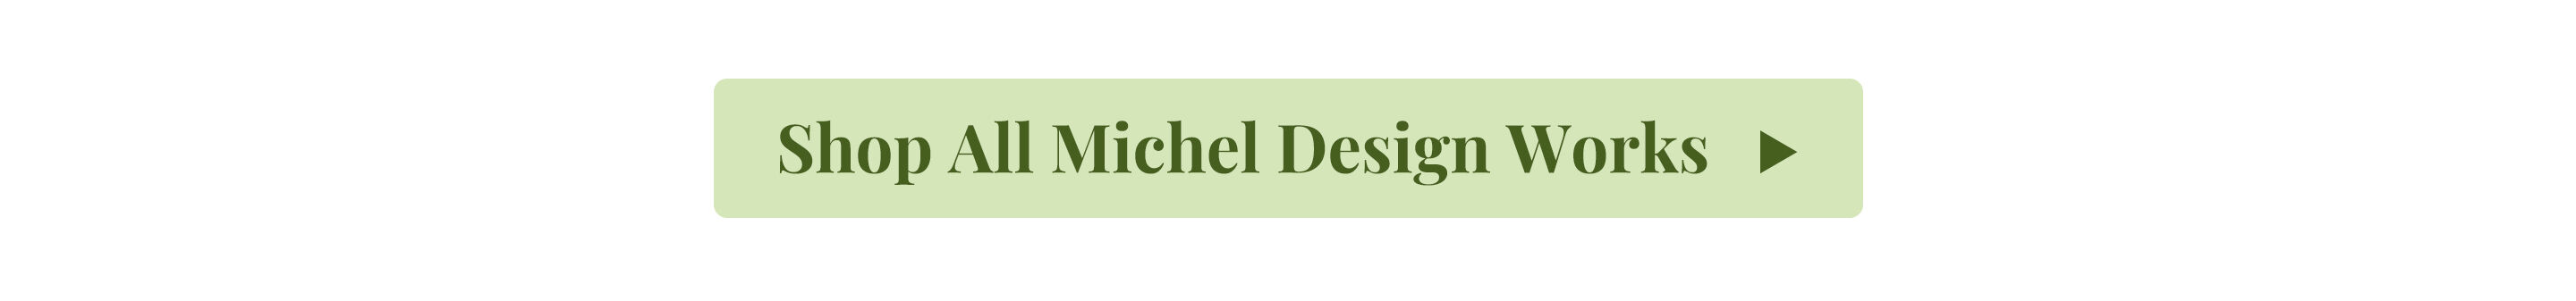 Shop All Michel Design Works